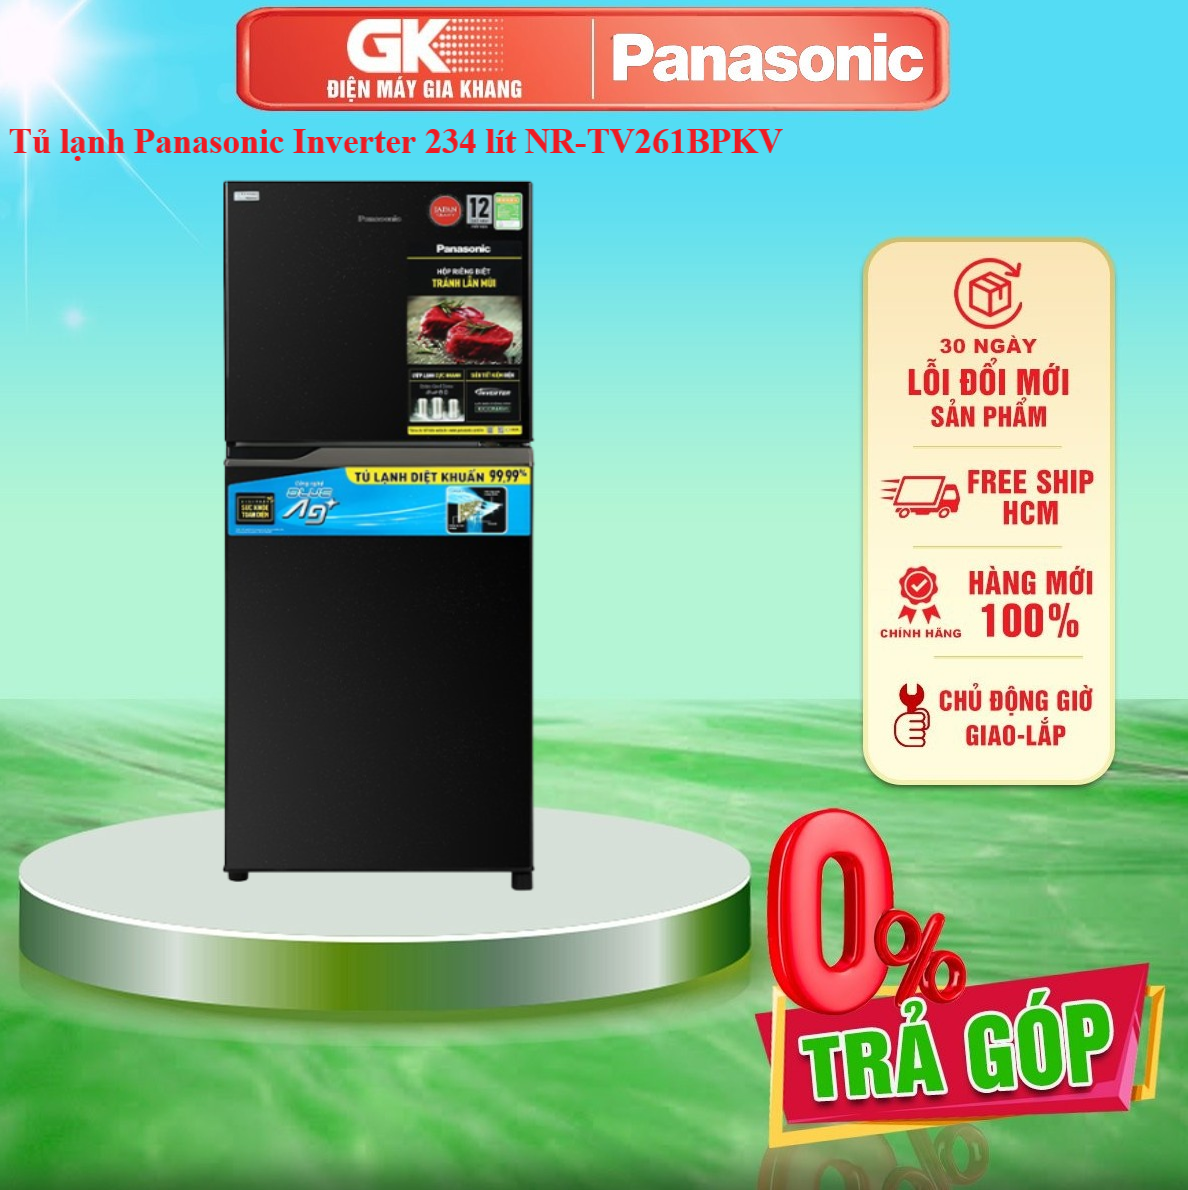 Tủ lạnh Panasonic Inverter 234 lít NR-TV261BPKV Mới 2021 - GIAO TOÀN QUỐC - FREESHIP HCM